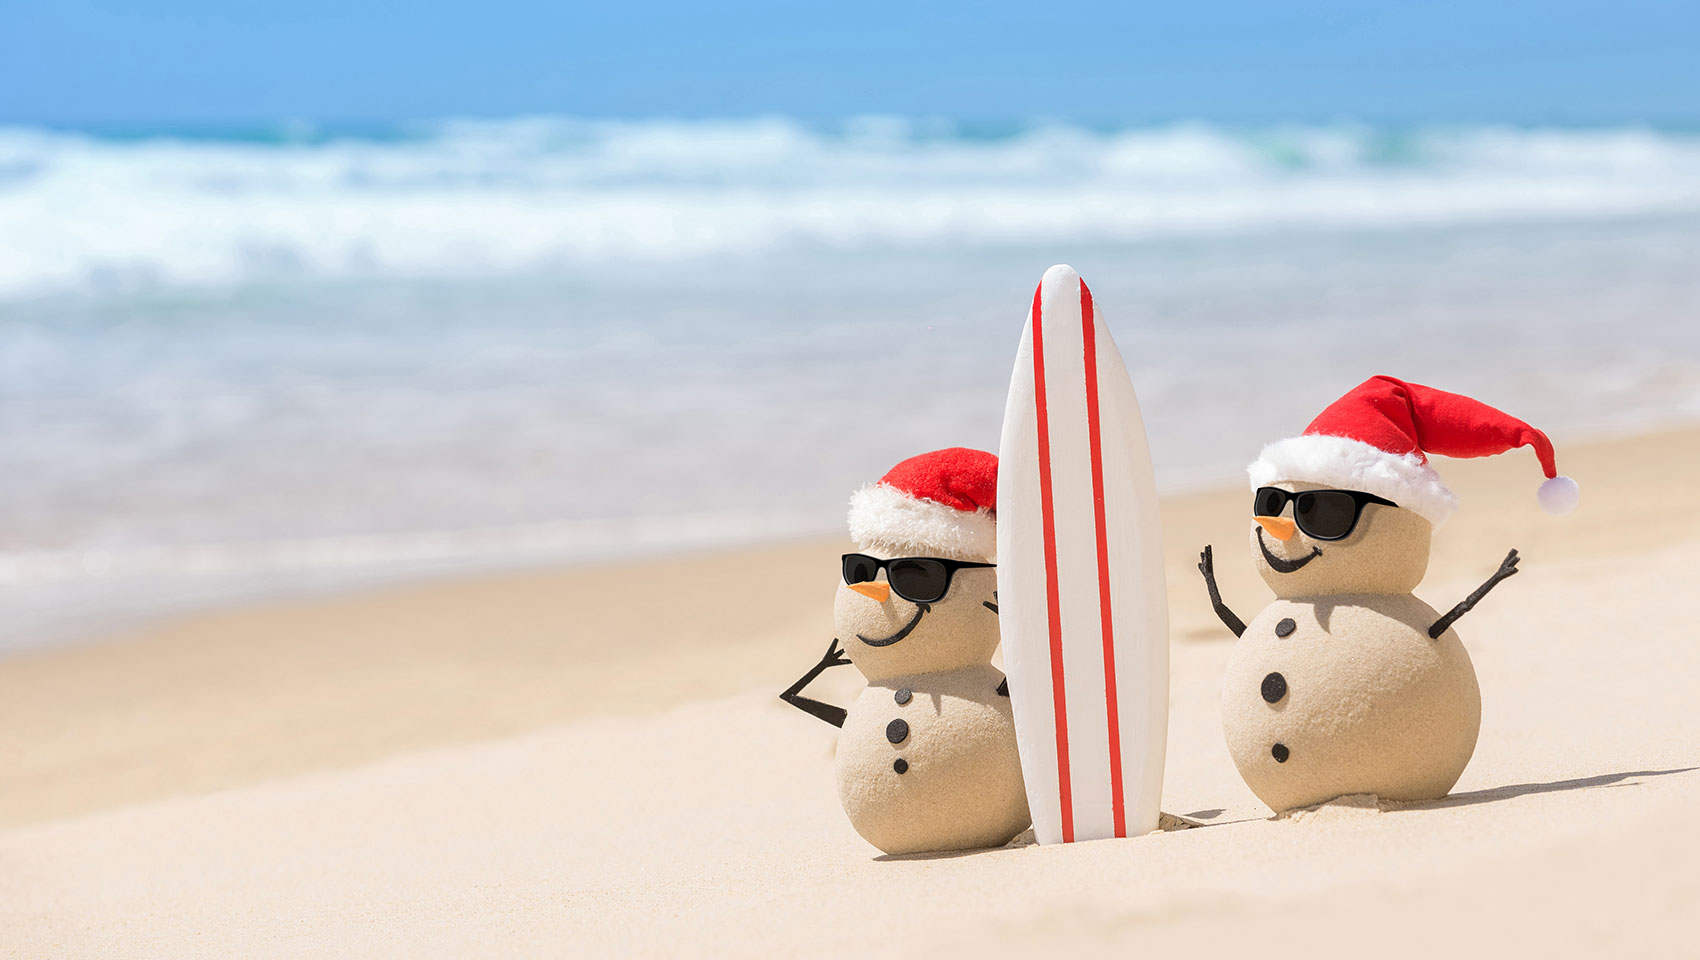 Sandy Snowmen on the beach with a surfboard